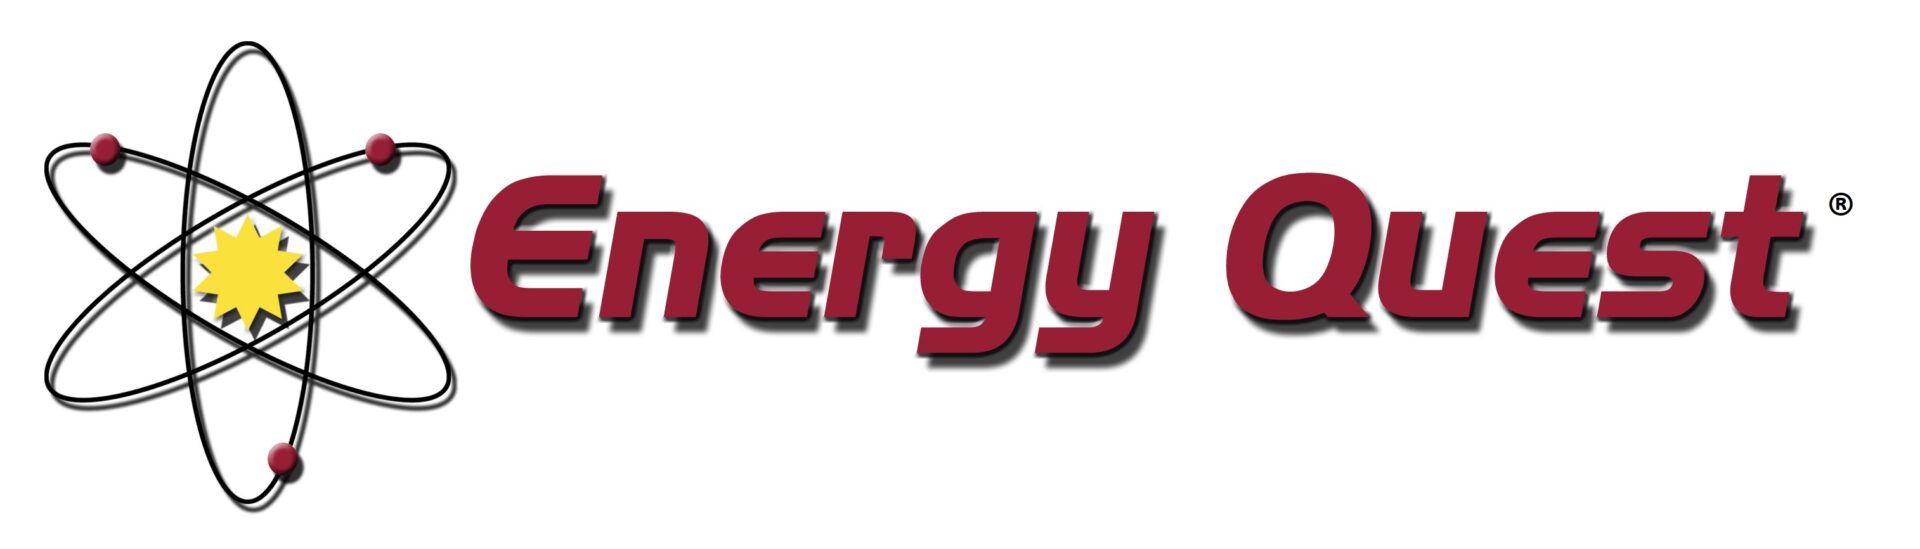 EnergyQuest_logo